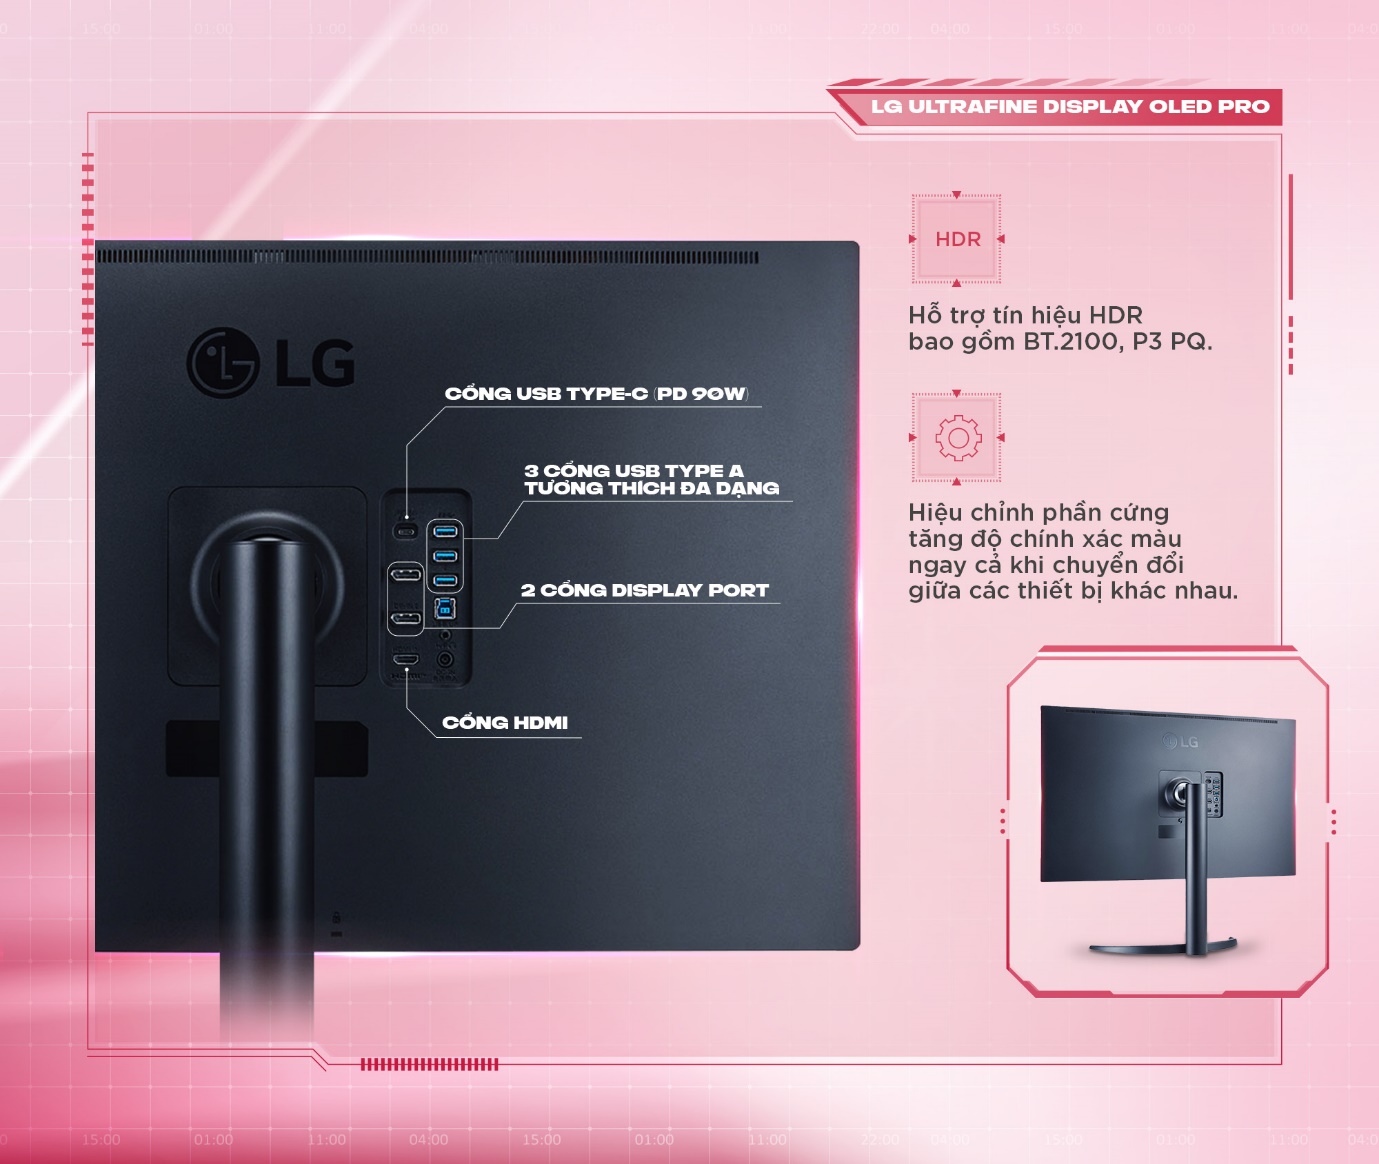 Công nghệ OLED - yếu tố tạo nên khác biệt cho màn hình máy tính LG - Ảnh 3.